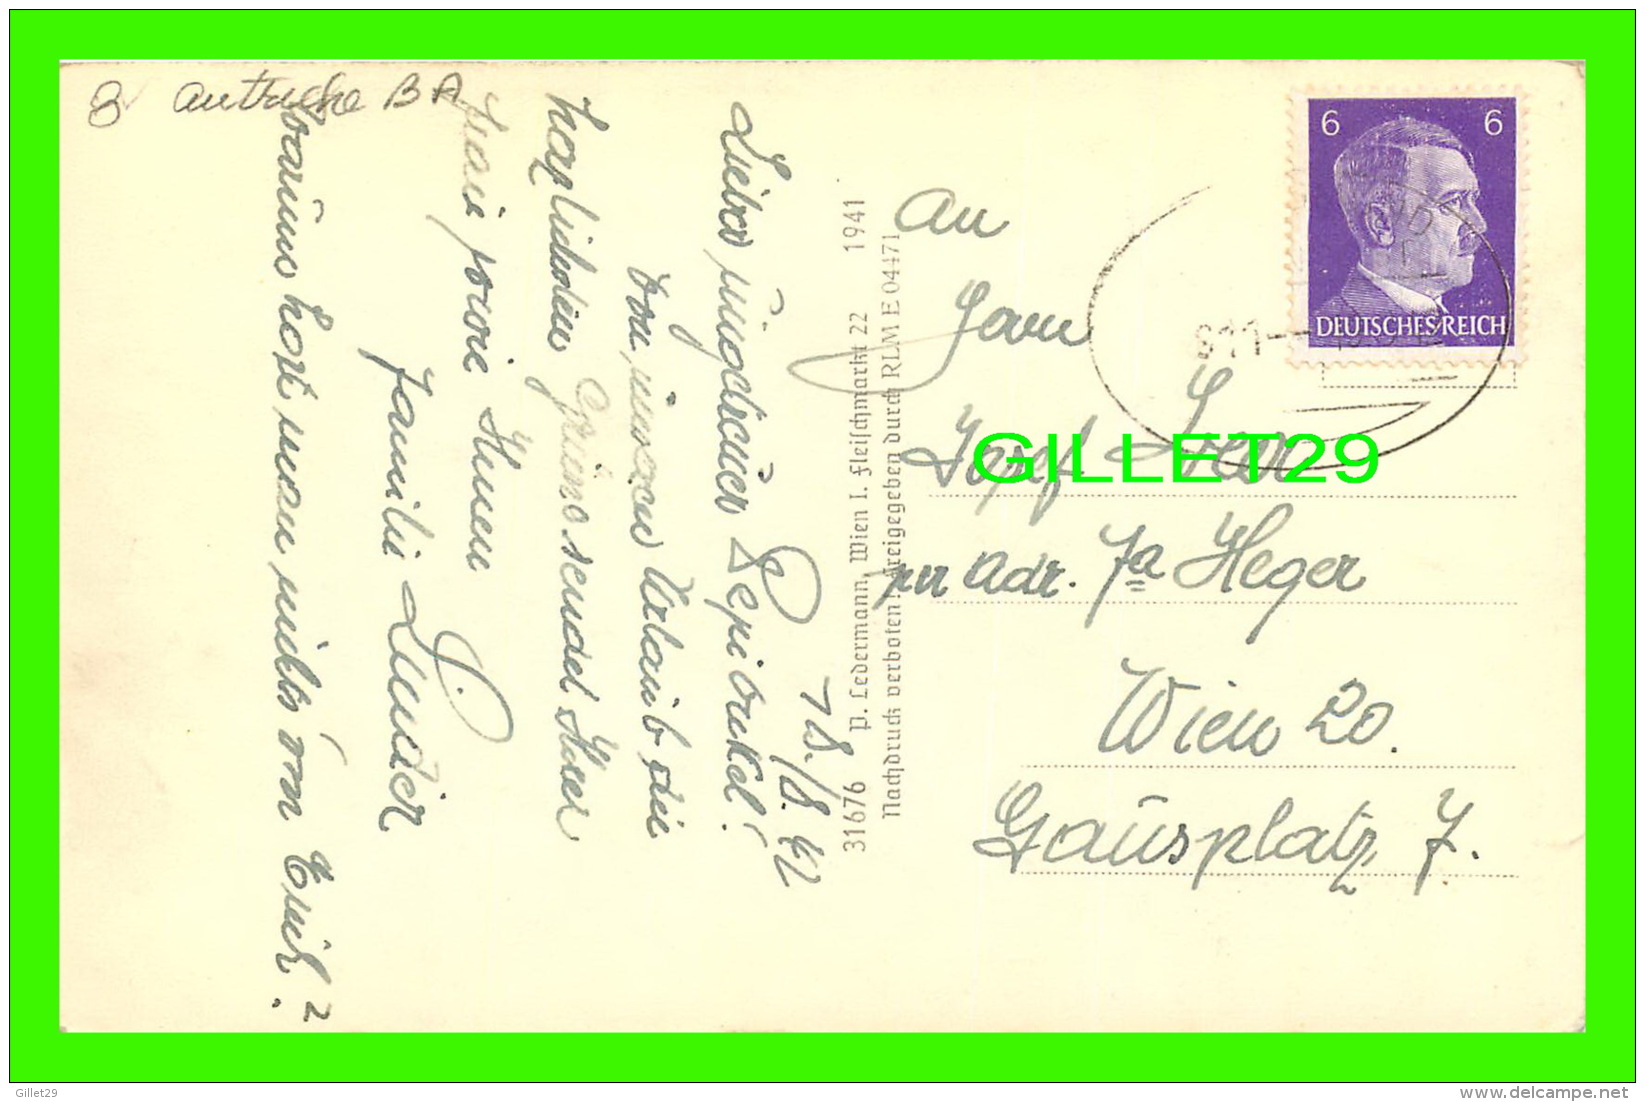 ALLENTSTEIG, AUSTRIA - NIEDERDONAU -  TRAVEL IN 1942 - - Zwettl